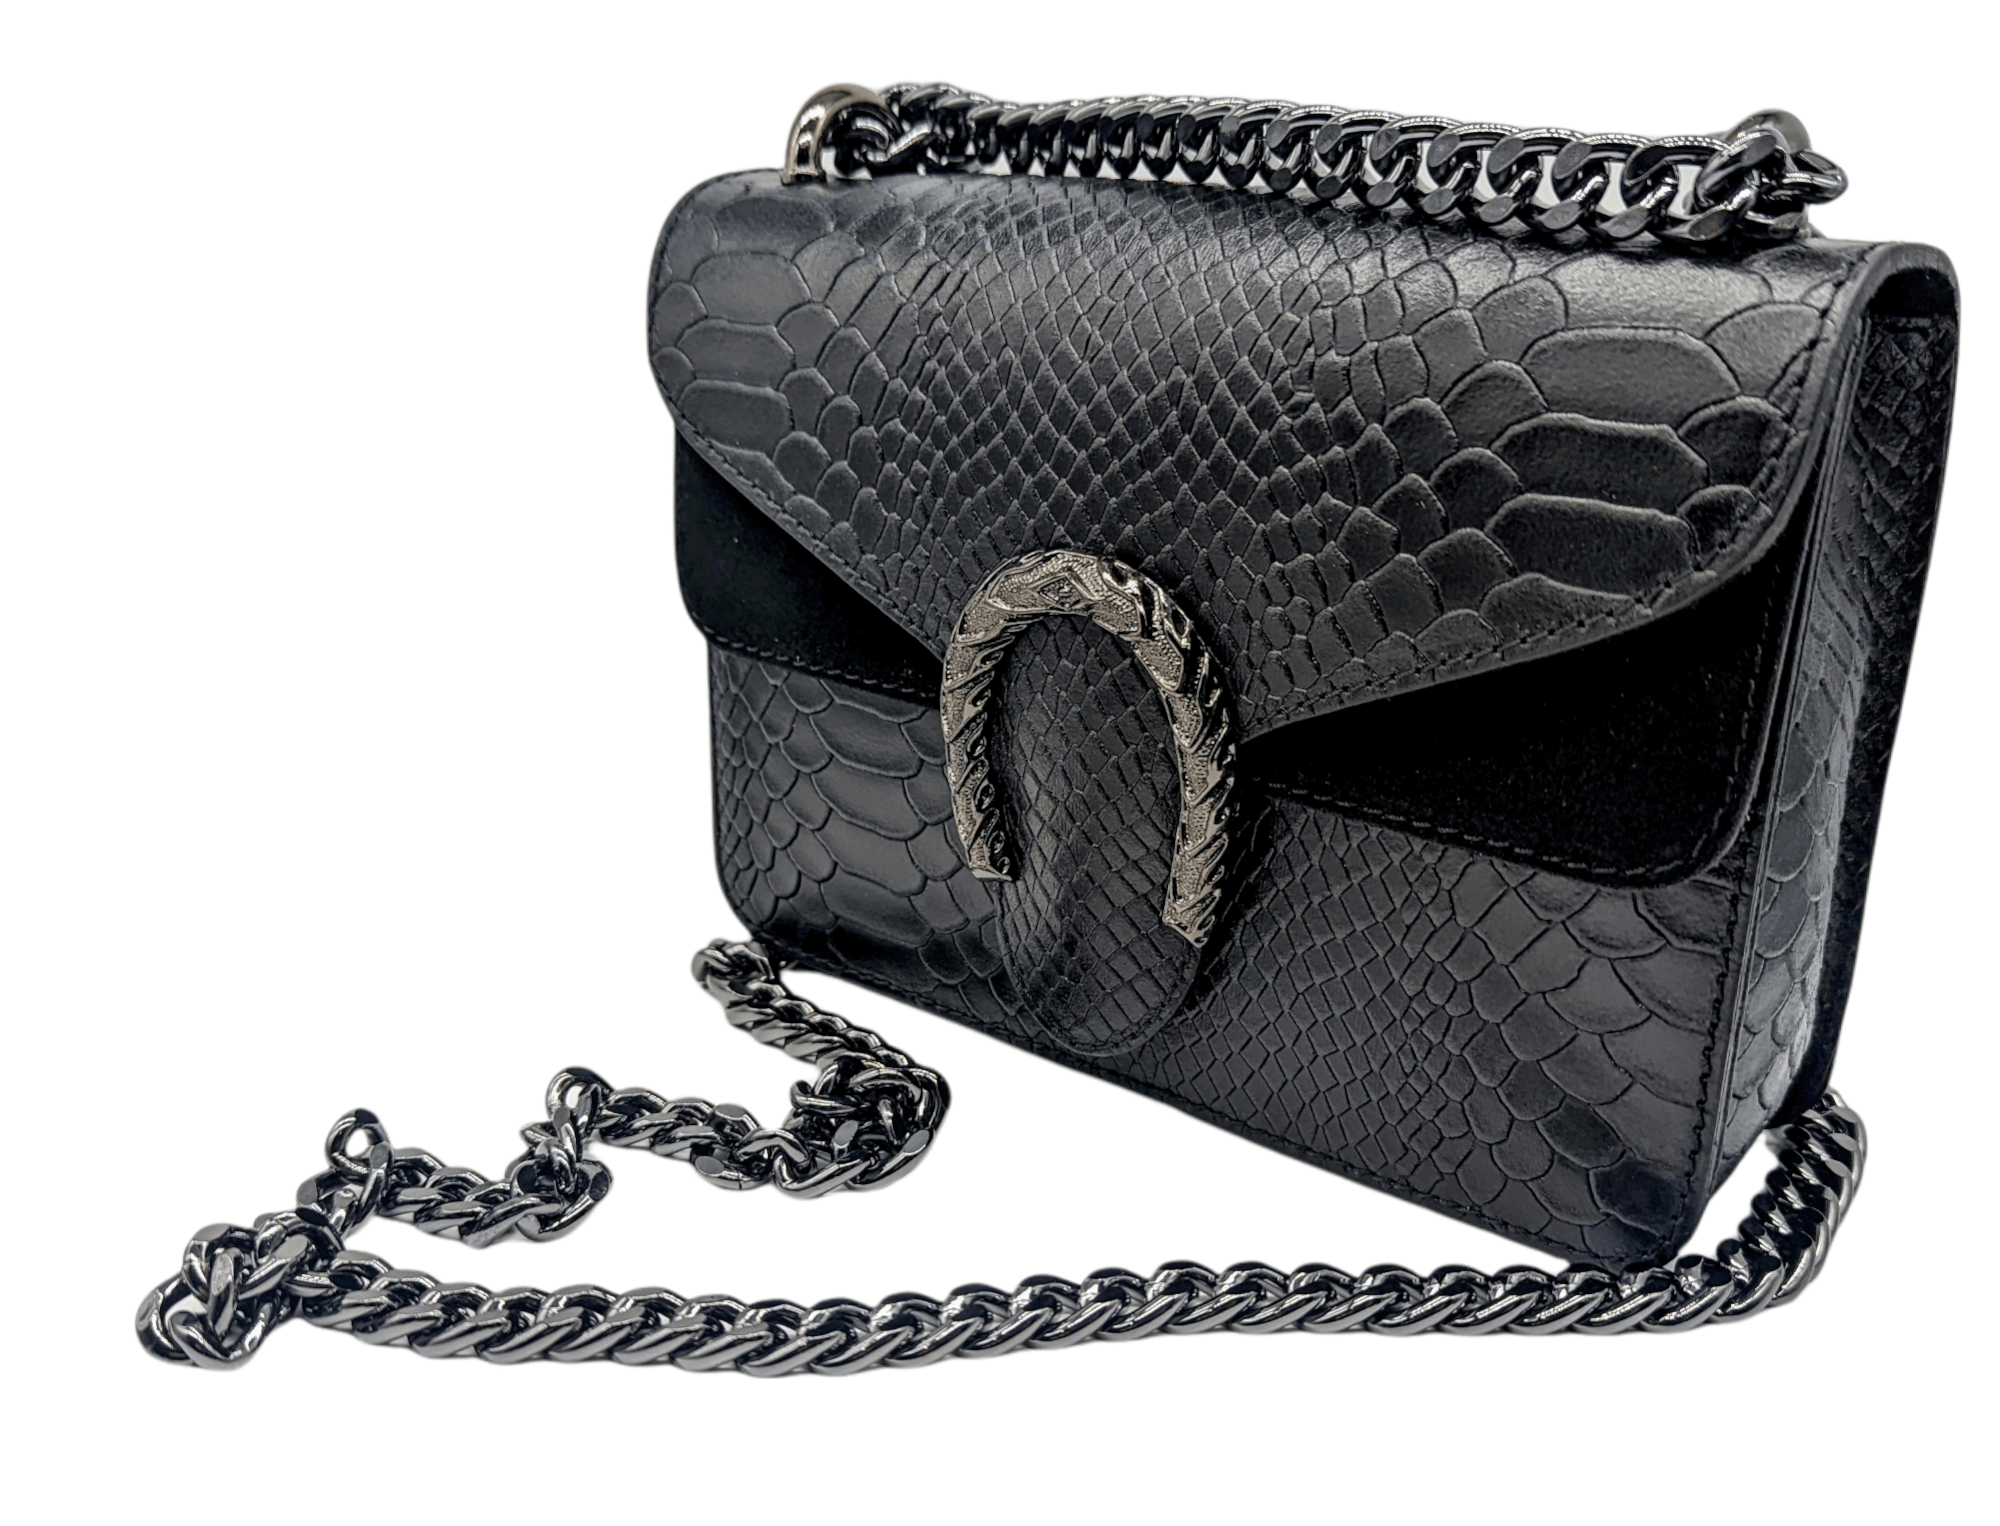 Italian Designer Leather Crossbody Bag with Horseshoe - Swolit Camilla Snake- Black